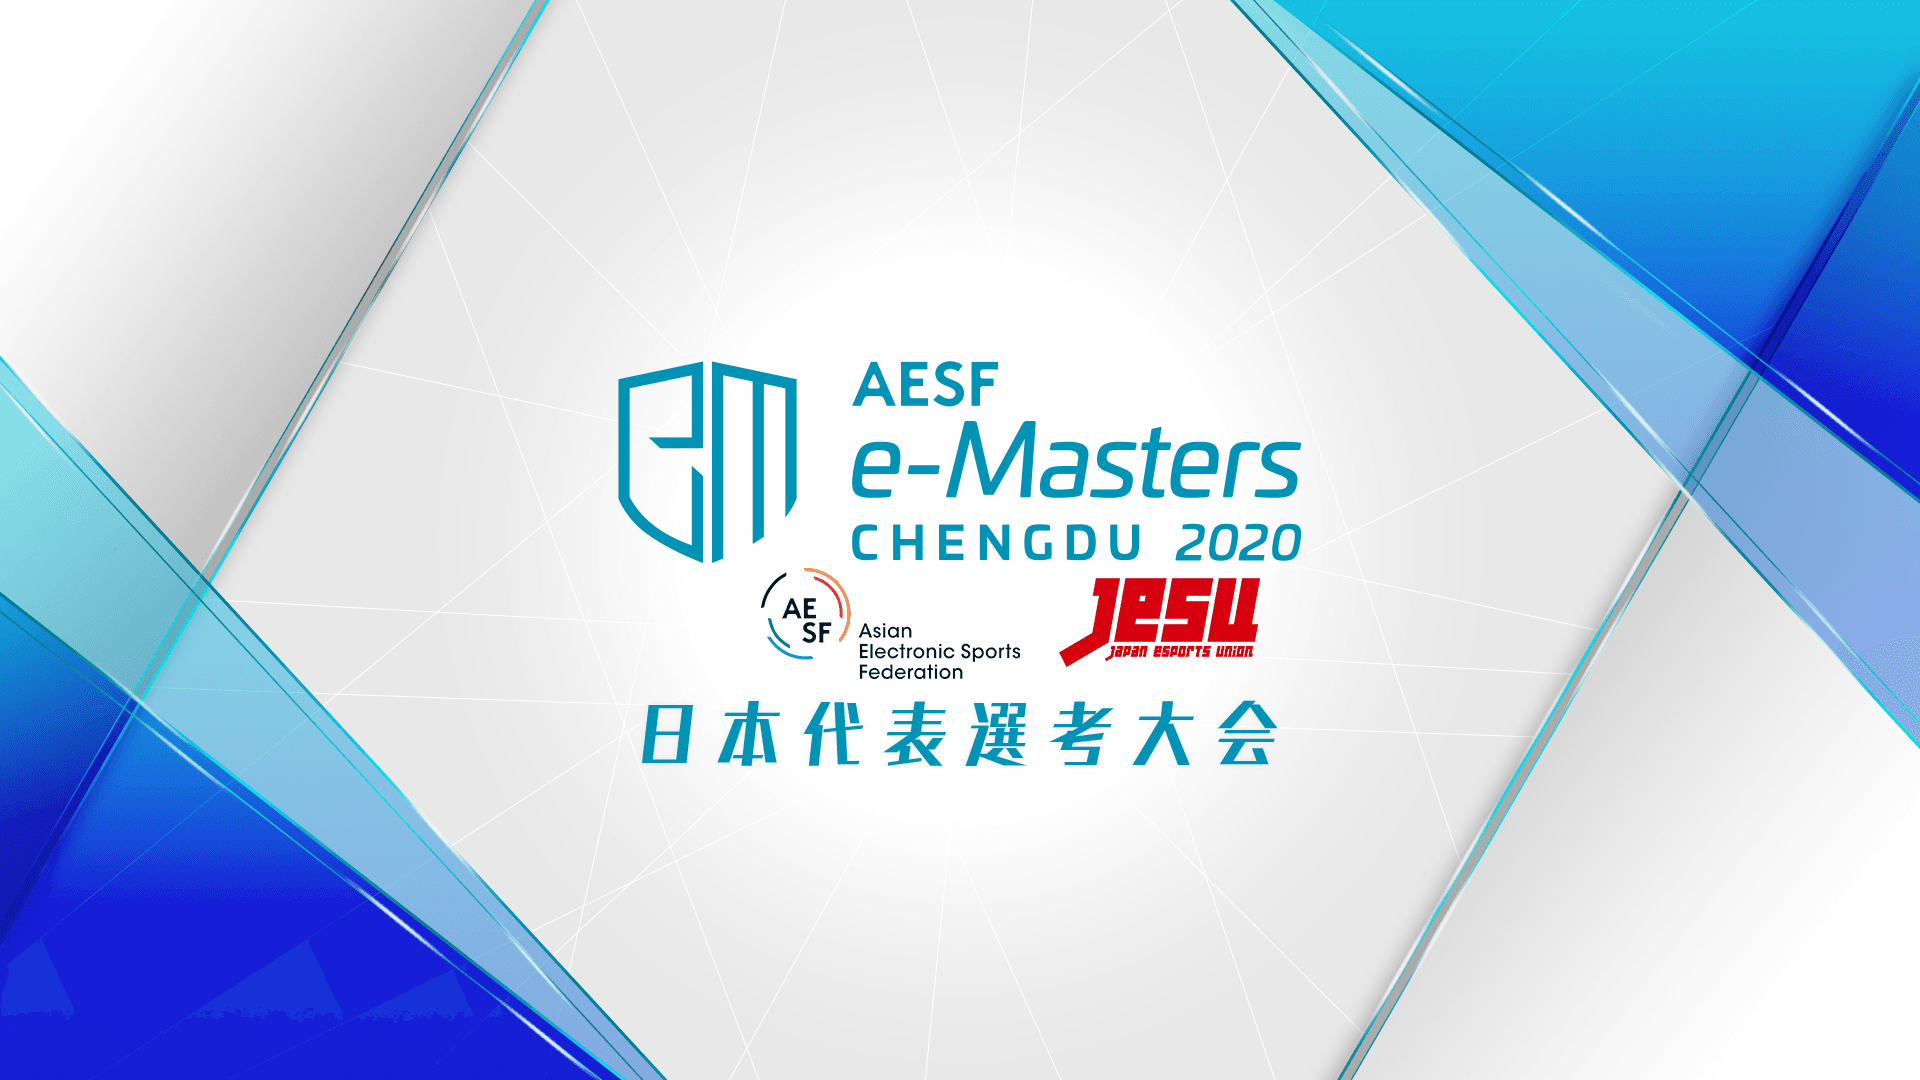 井上瑞貴さん、国際eスポーツ競技会「AESF e-Masters 成都 2020」日本代表に選出